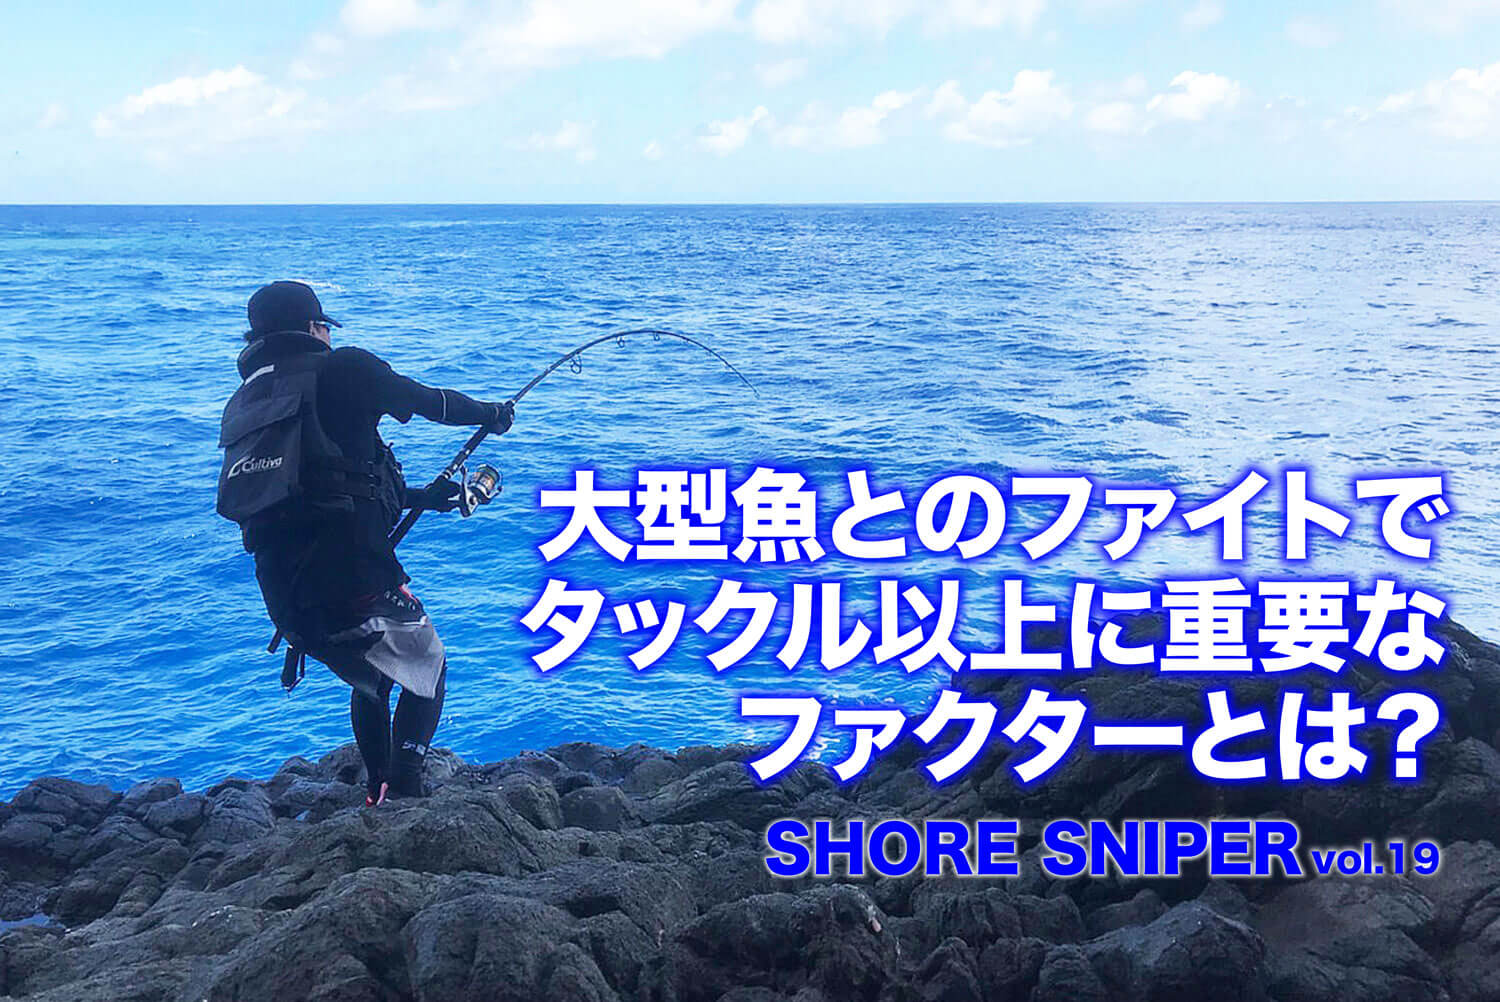 大型魚とのファイトでタックル以上に重要なファクターとは Shore Sniper Vol 19 Swマガジンweb 海 のルアーマンのための総合情報メディア